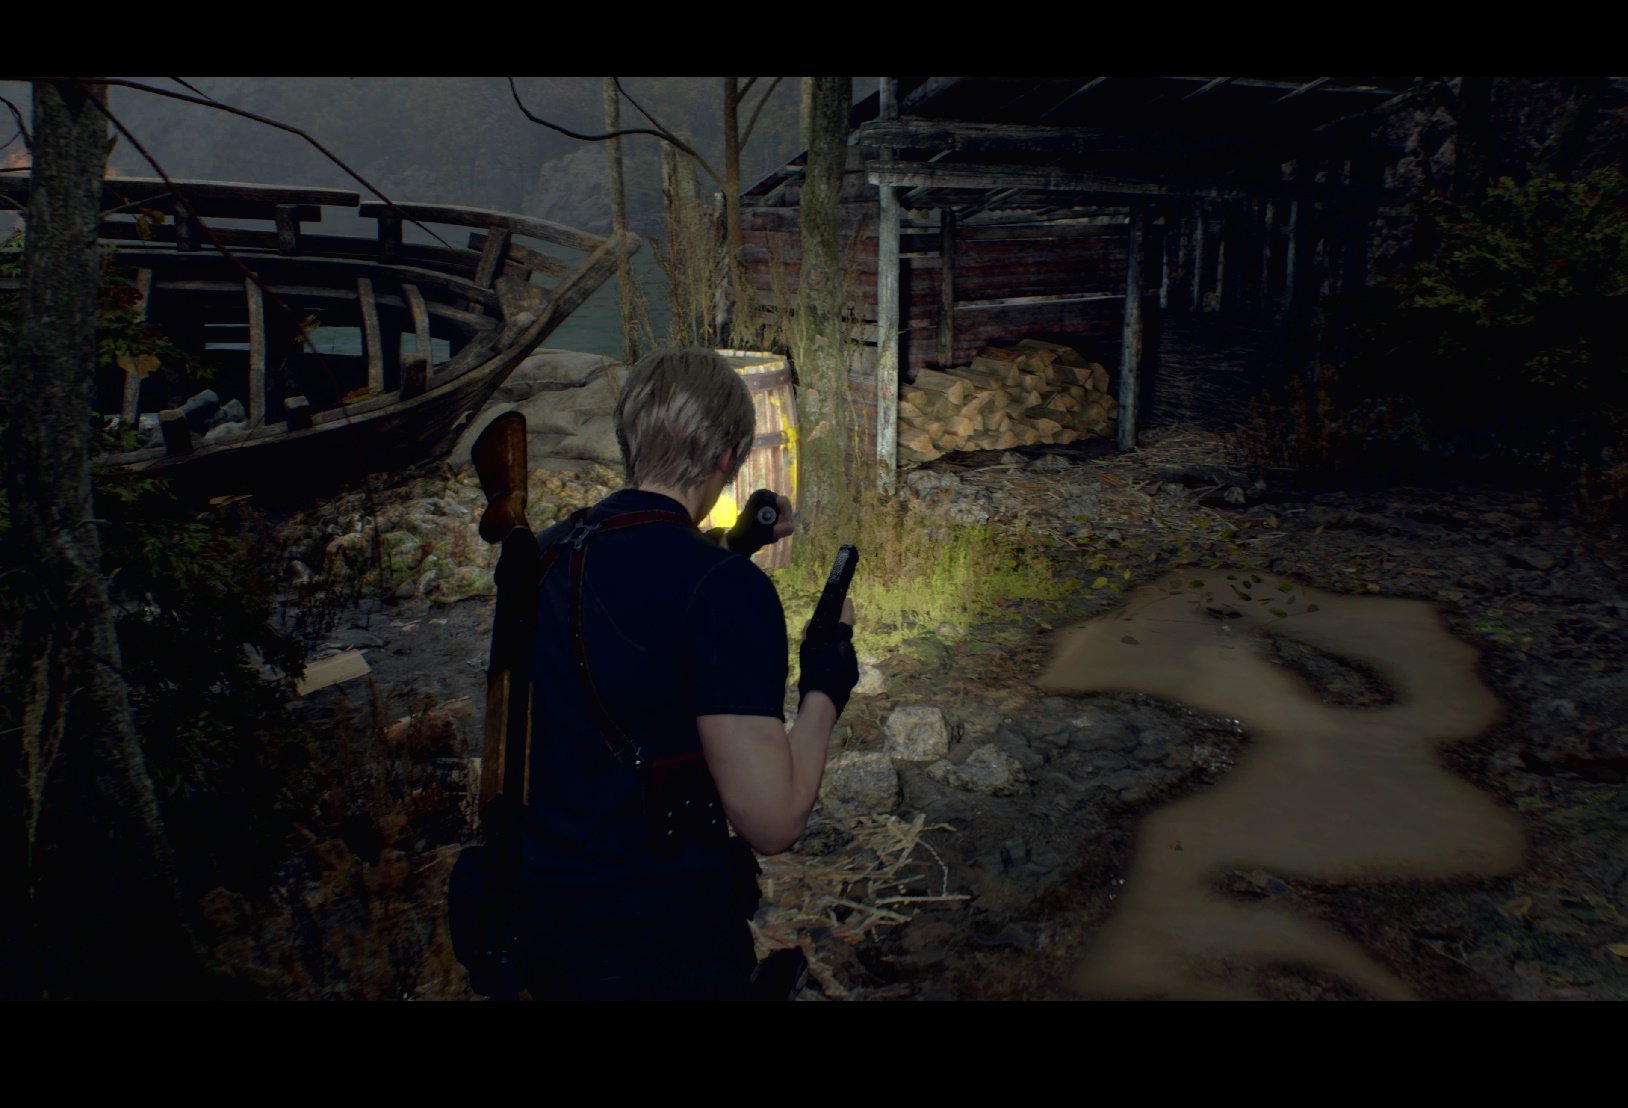 Resident Evil 4 apresenta novas imagens do remake